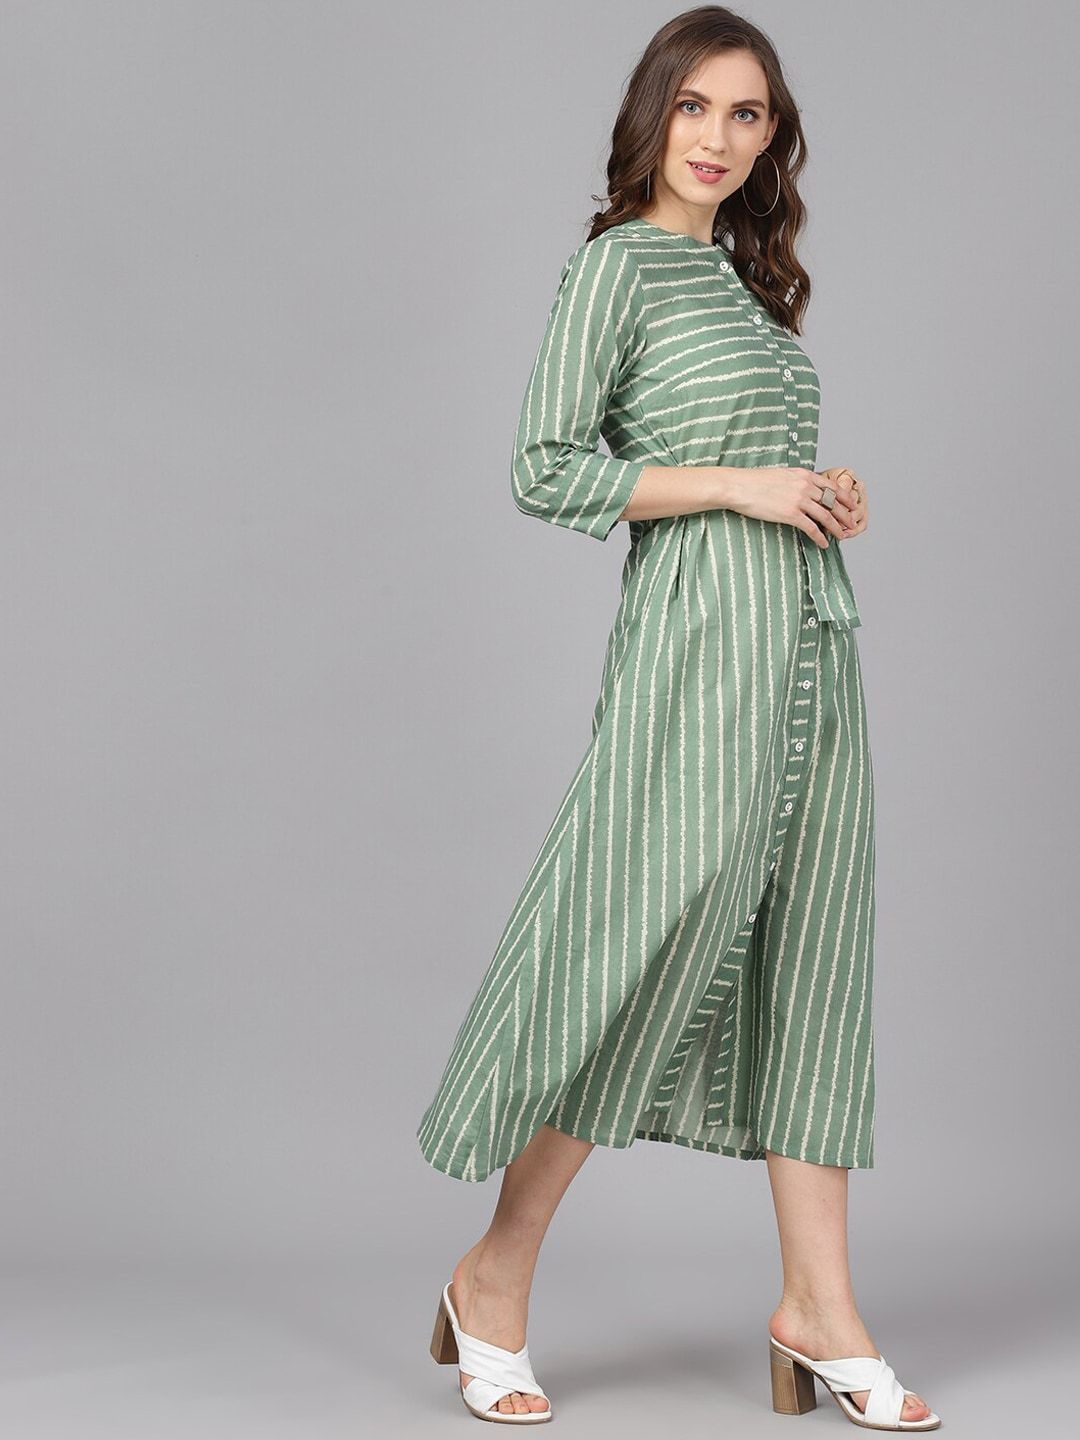 Women's  Green & Beige Striped A-Line Dress - AKS